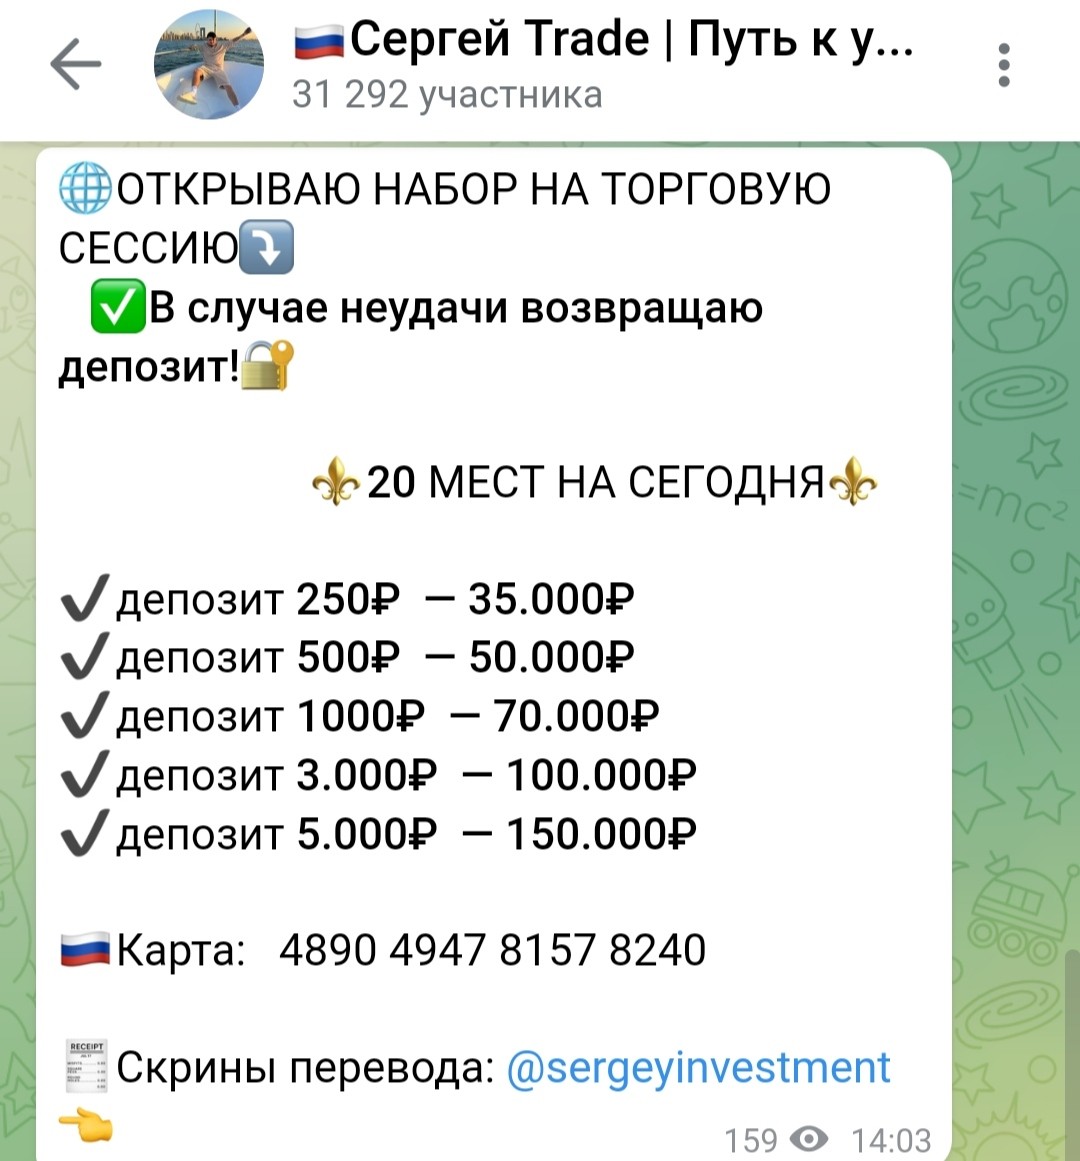 Условия инвестирования с Сергей Trade